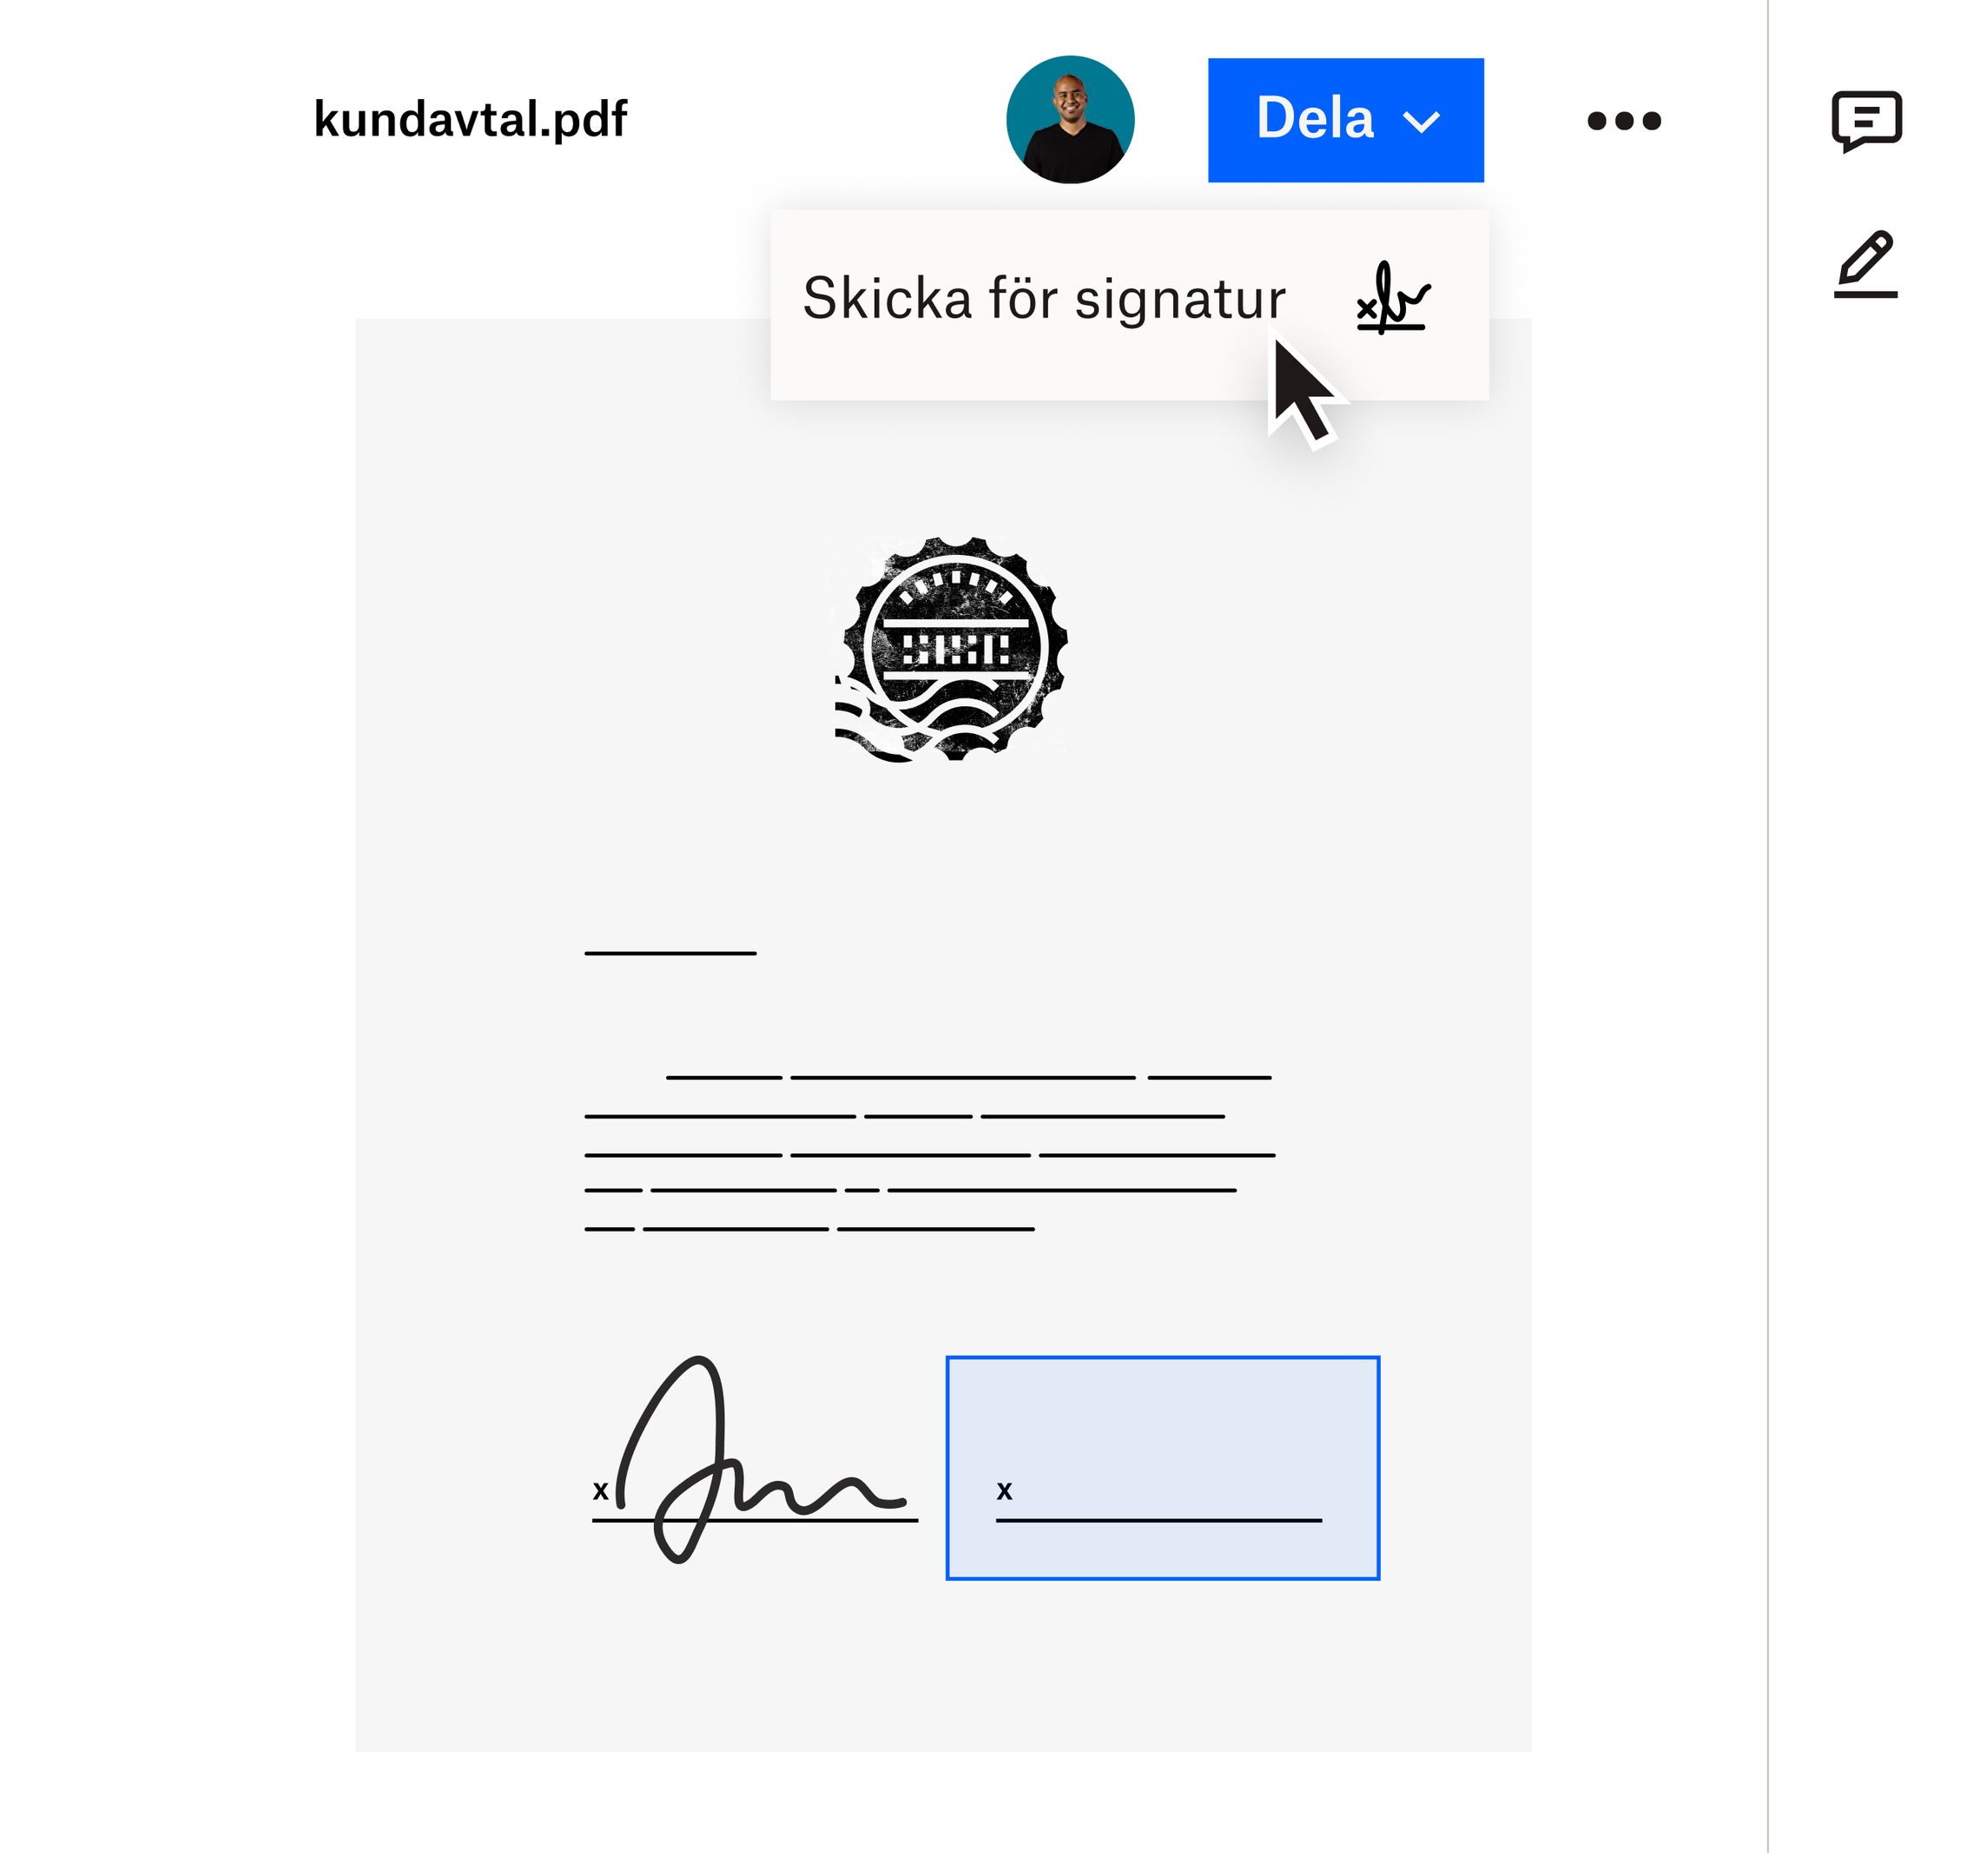 En användare som klickar på alternativet Skicka för signatur i rullgardinsmenyn Dela i Dropbox-gränssnittet